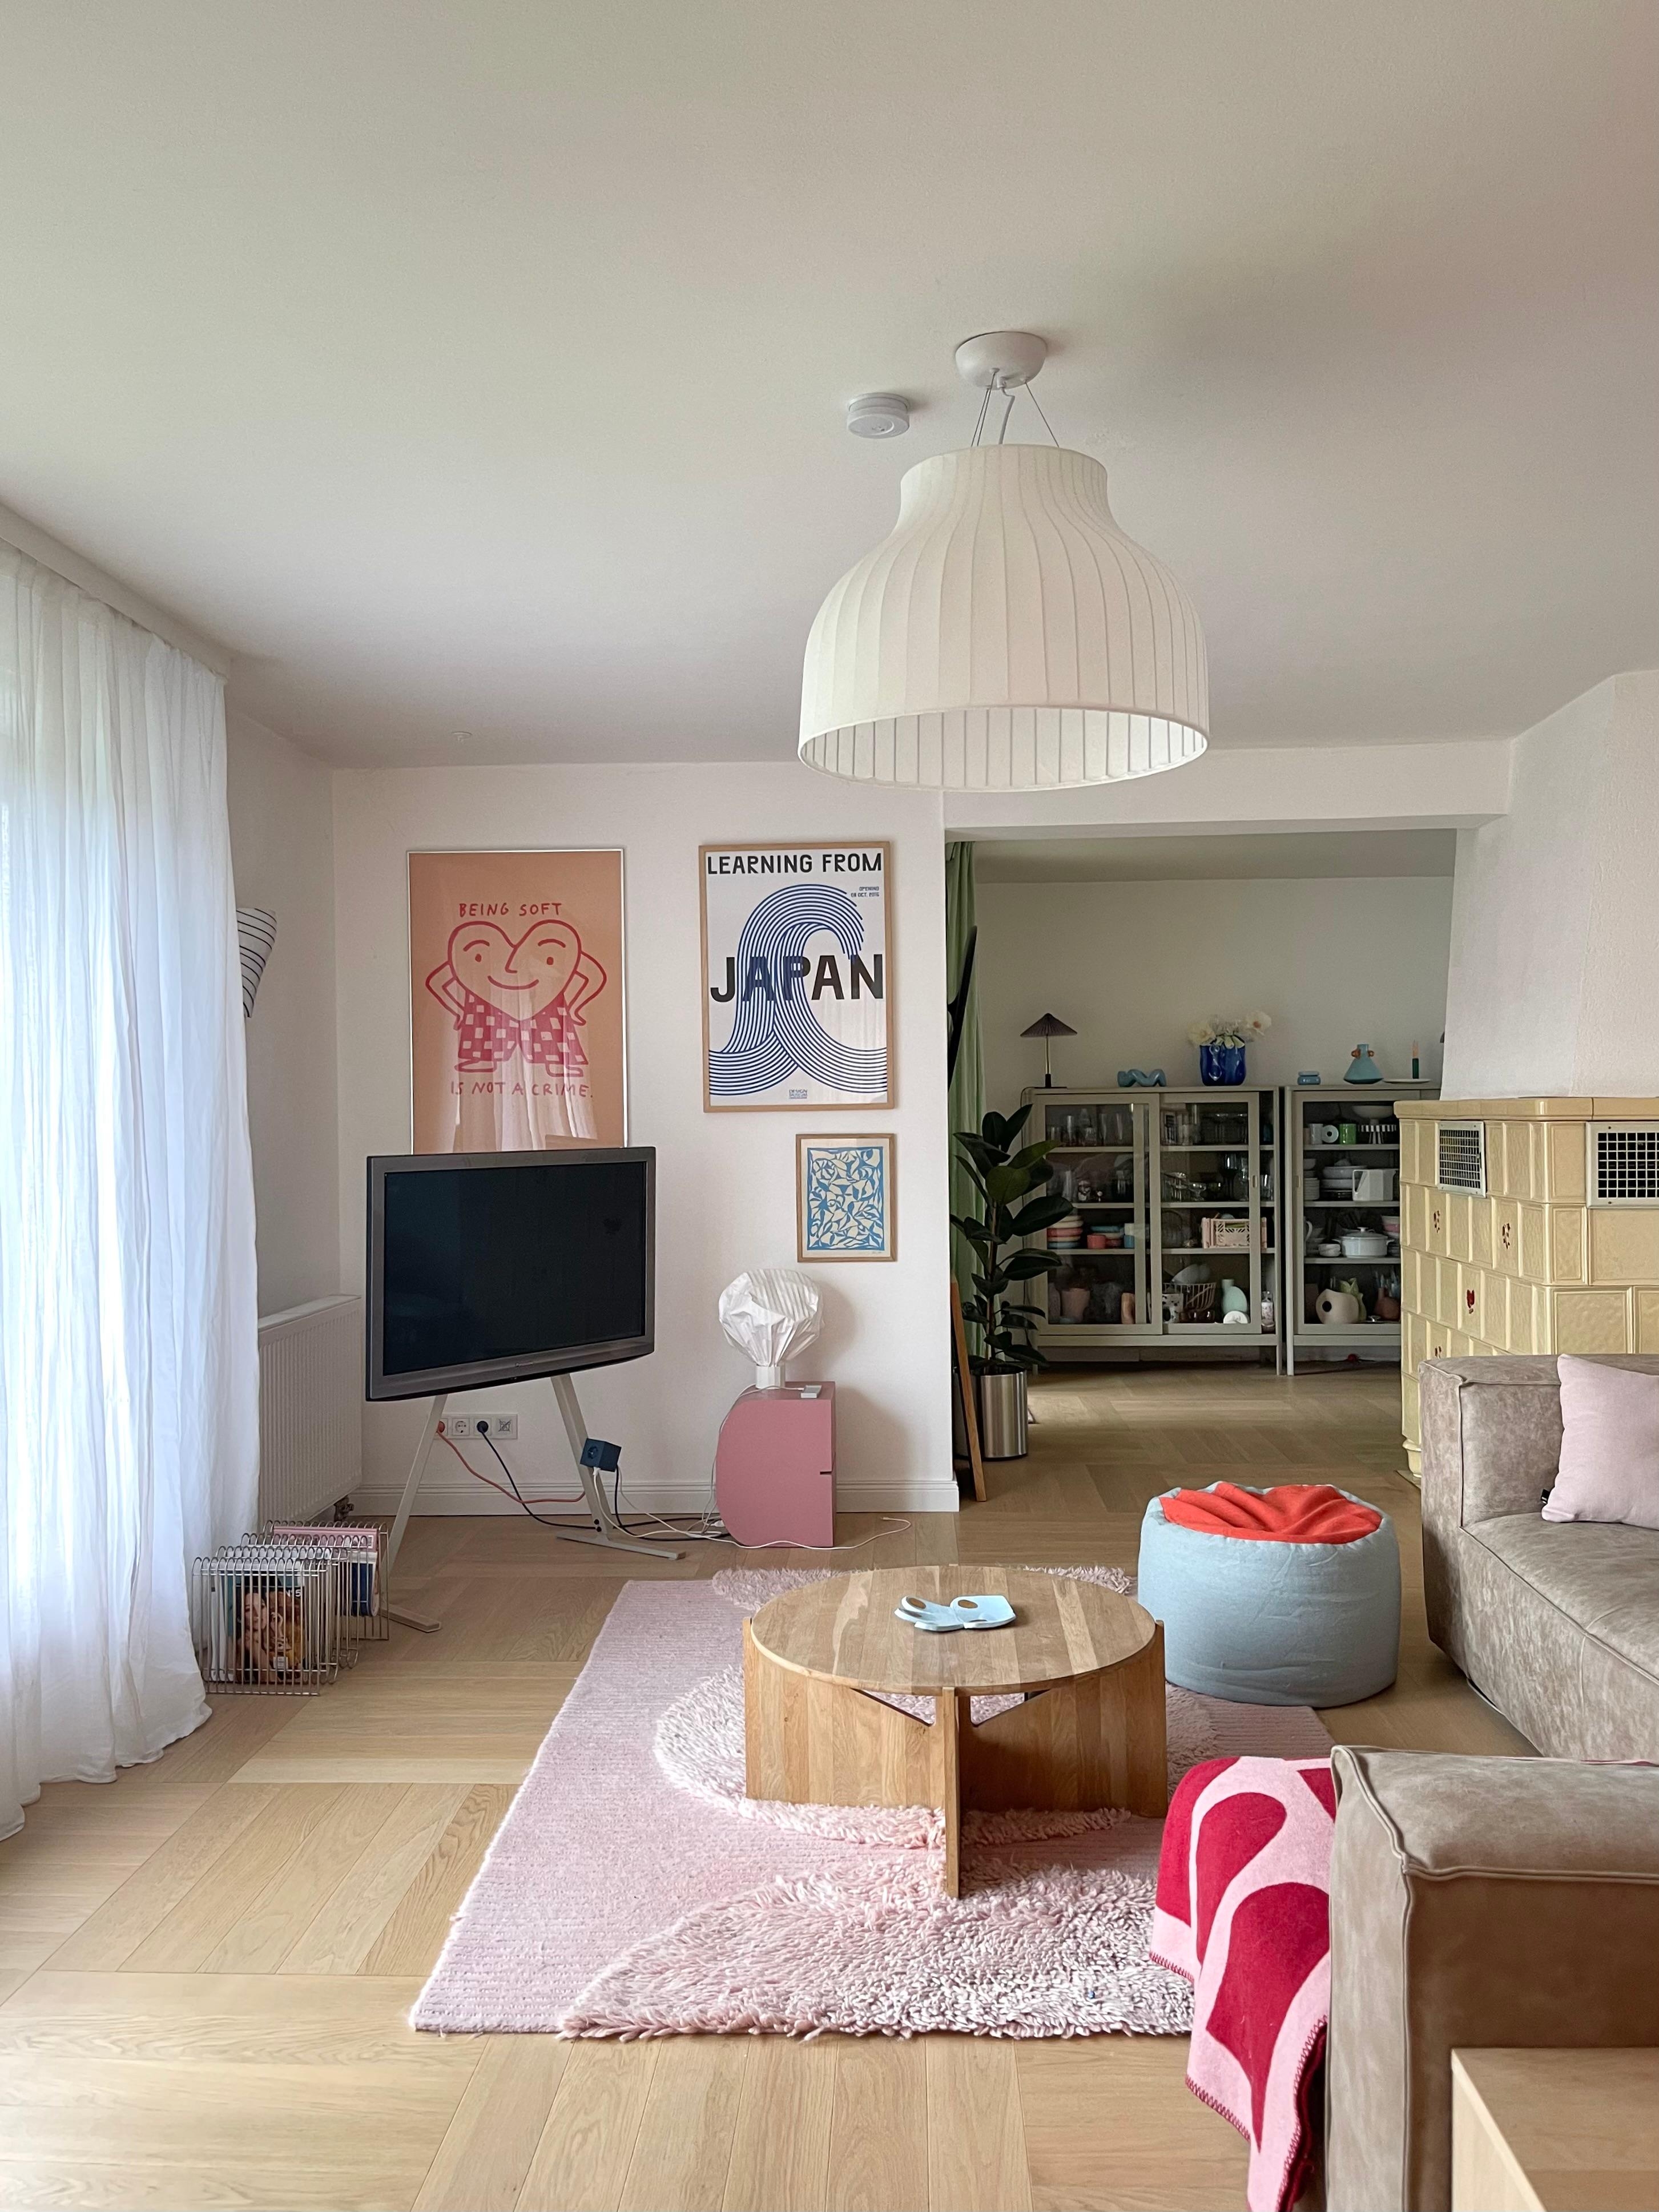 #wohnzimmer #couch #couchstyle #home #lampe #wohnen #interior #altbau #cozy #teppich #living #livingroom #farben 